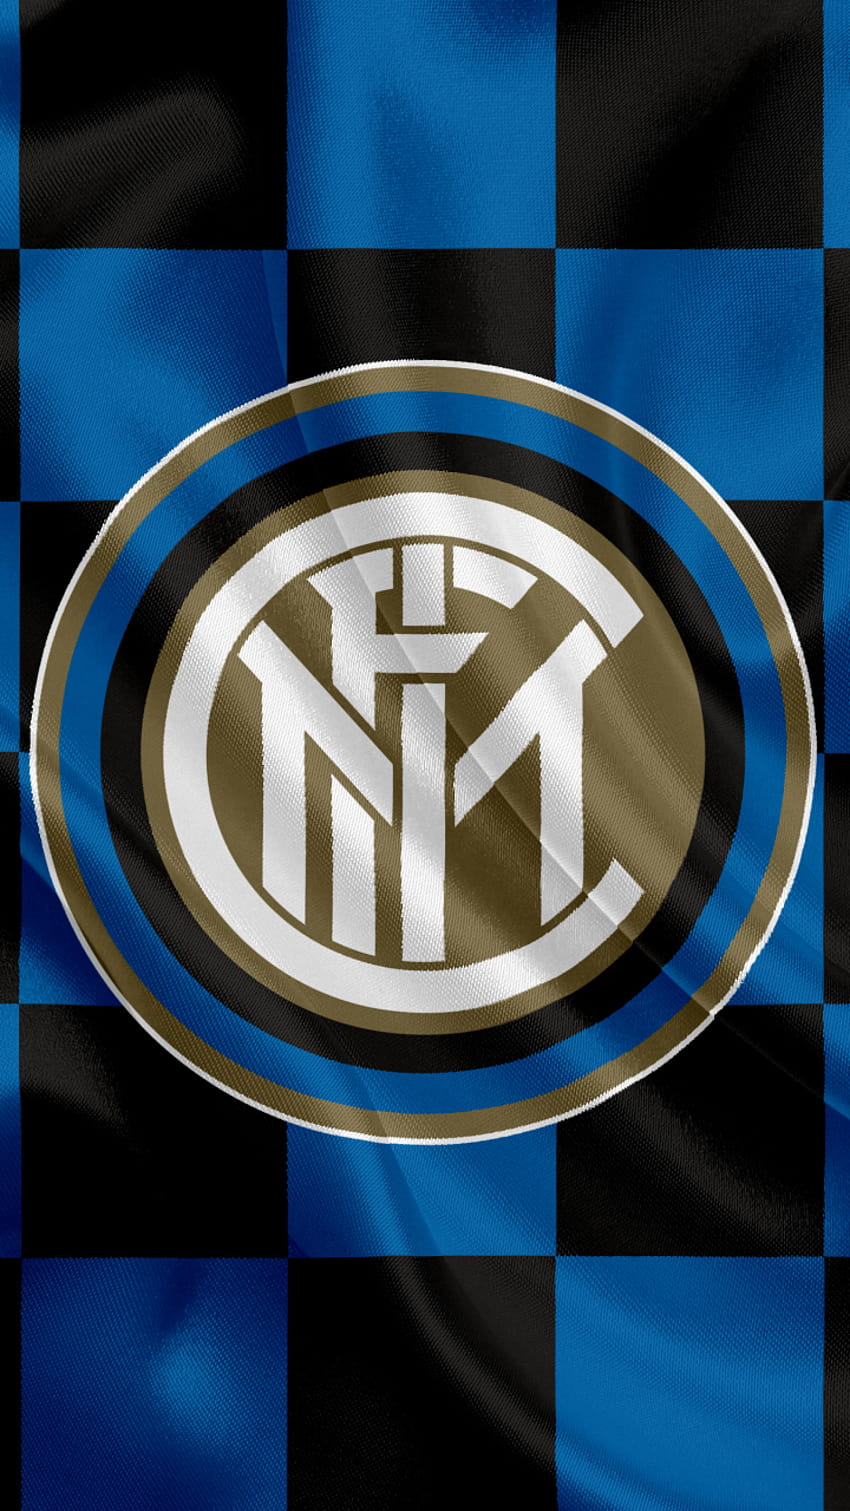 Inter Milan 2019, logo antar milan wallpaper ponsel HD